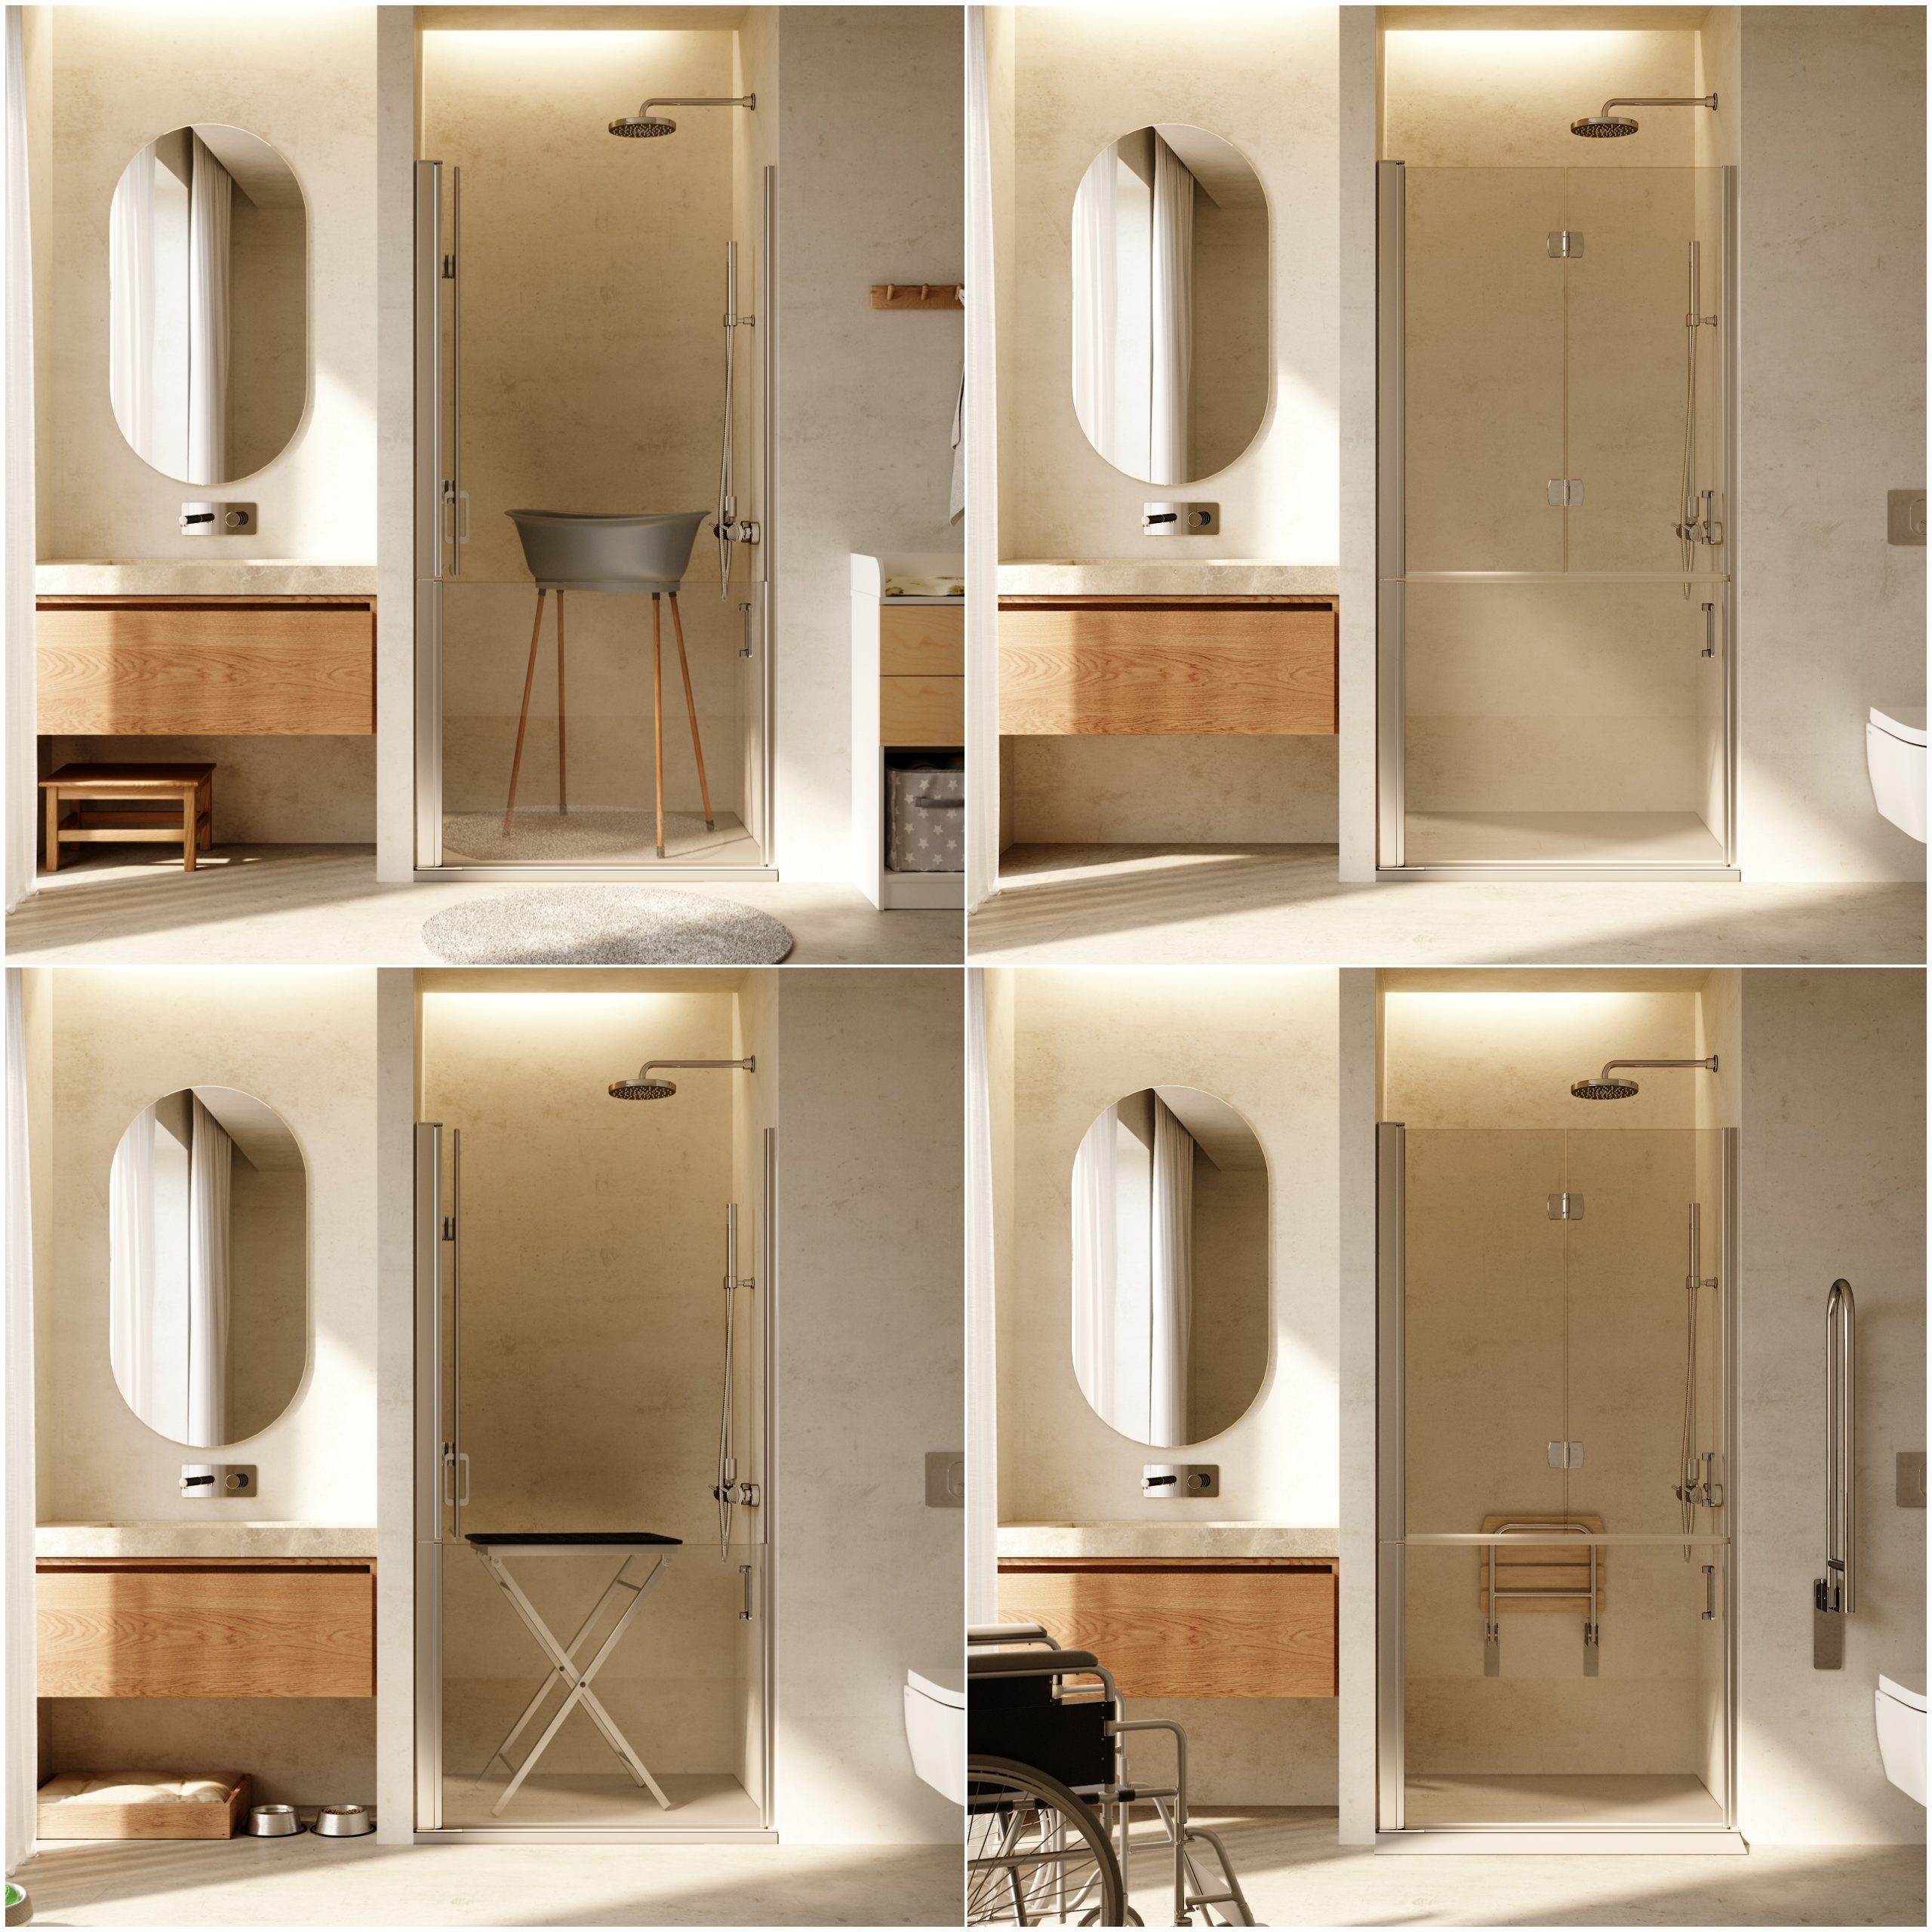 Una estética sencilla y limpia en espacios de ducha versátiles y funcionales.